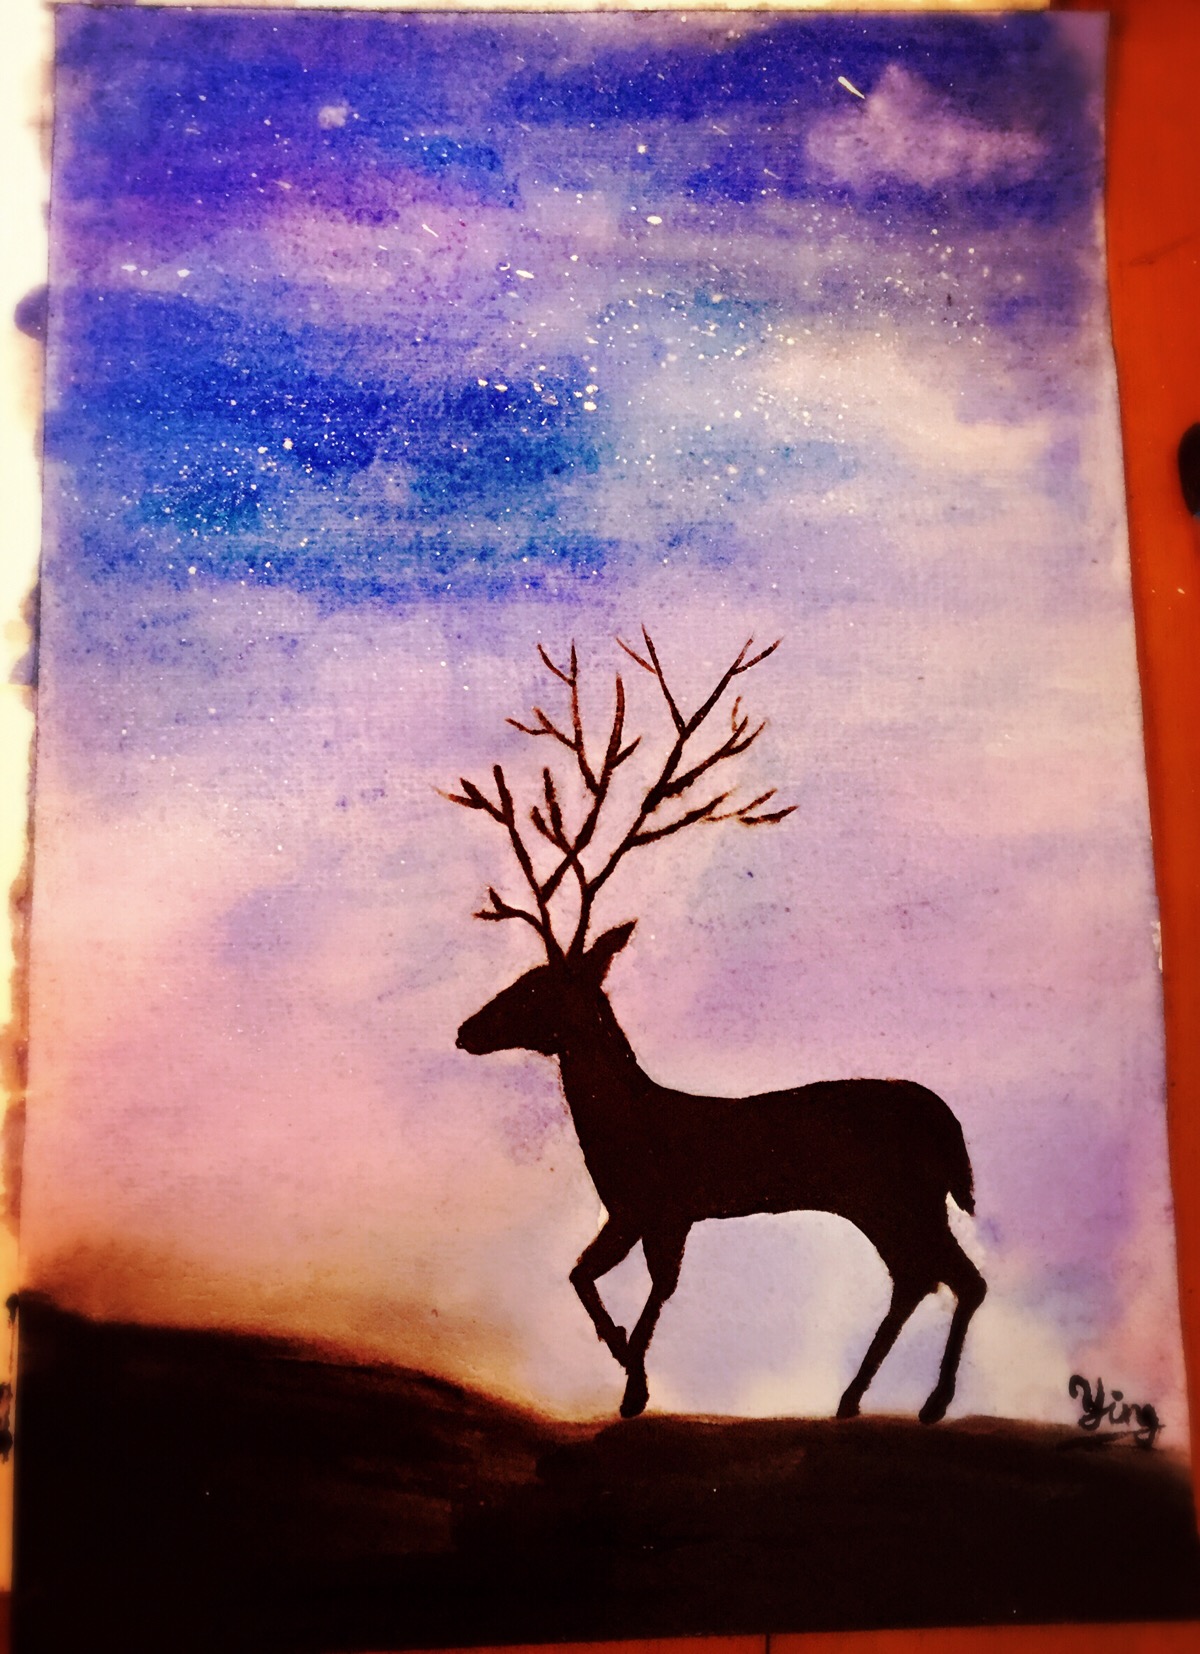 星空下的鹿简笔画图片